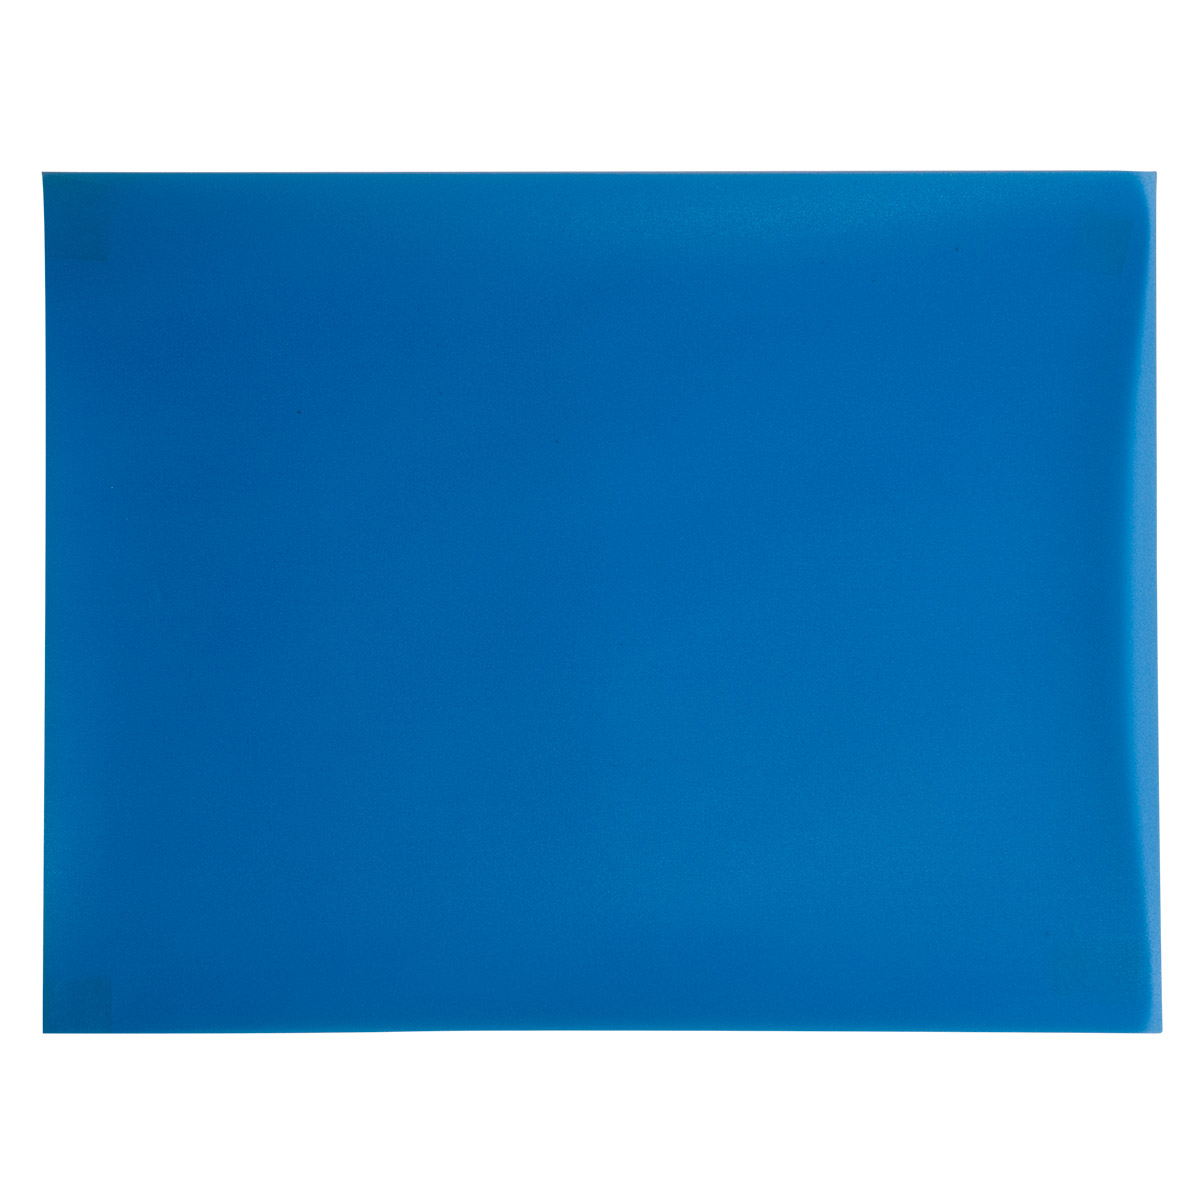 3M Schleifpapier ILF 263X, 216 x 279 mm, Korn 40 µm, dunkelblau, nicht selbstklebend